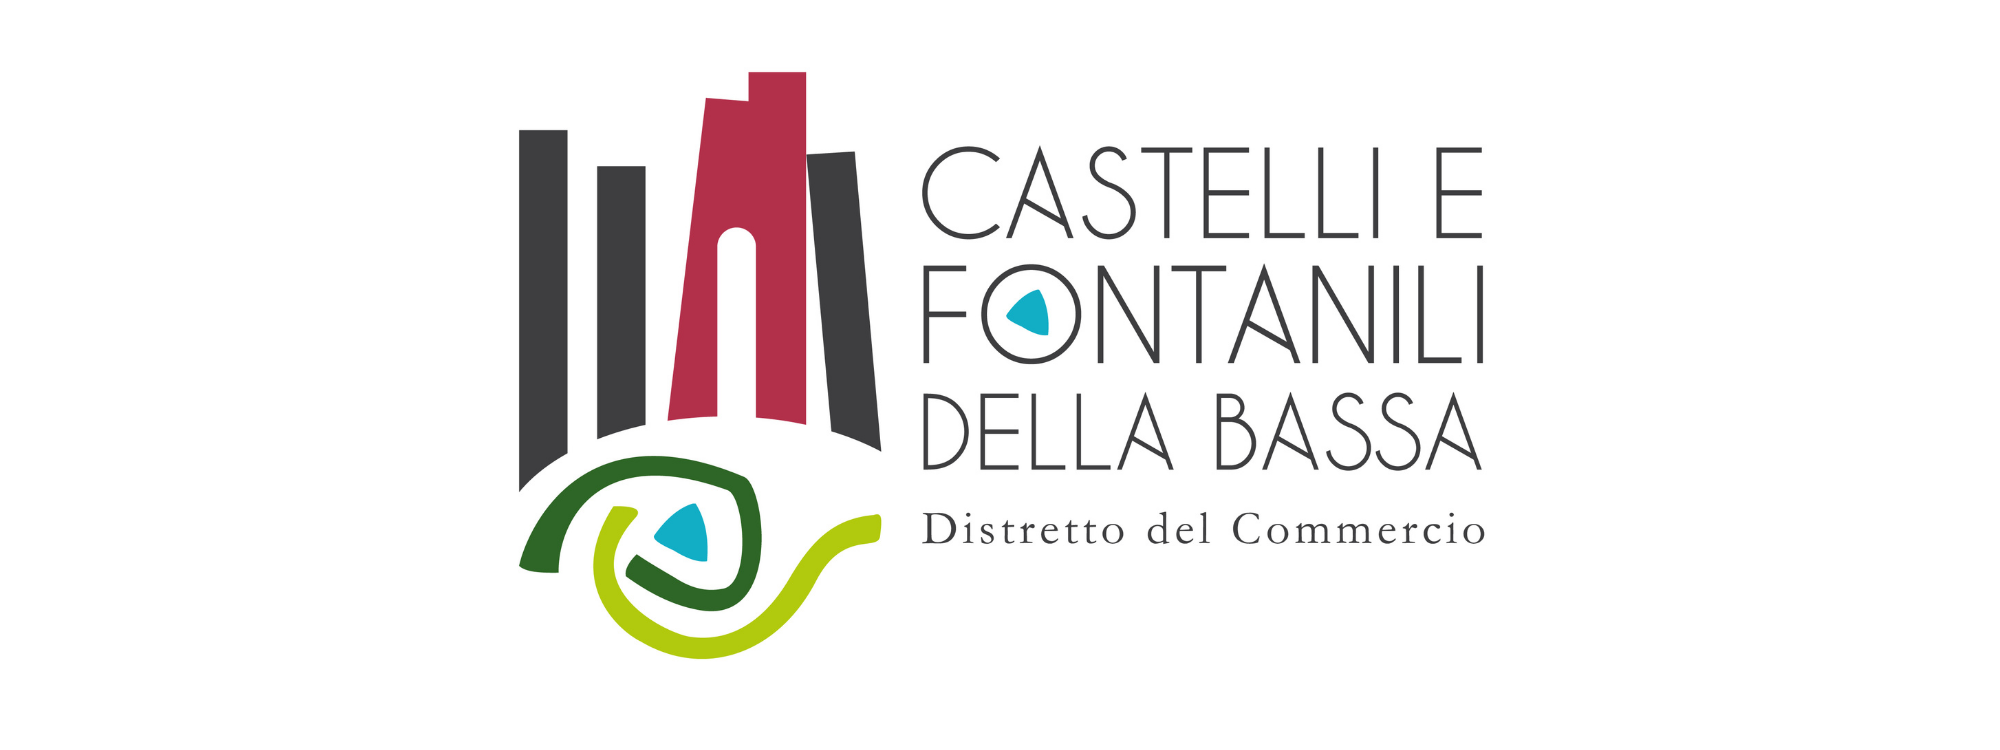 Distretto del Commercio - Castelli e Fontanili della Bassa